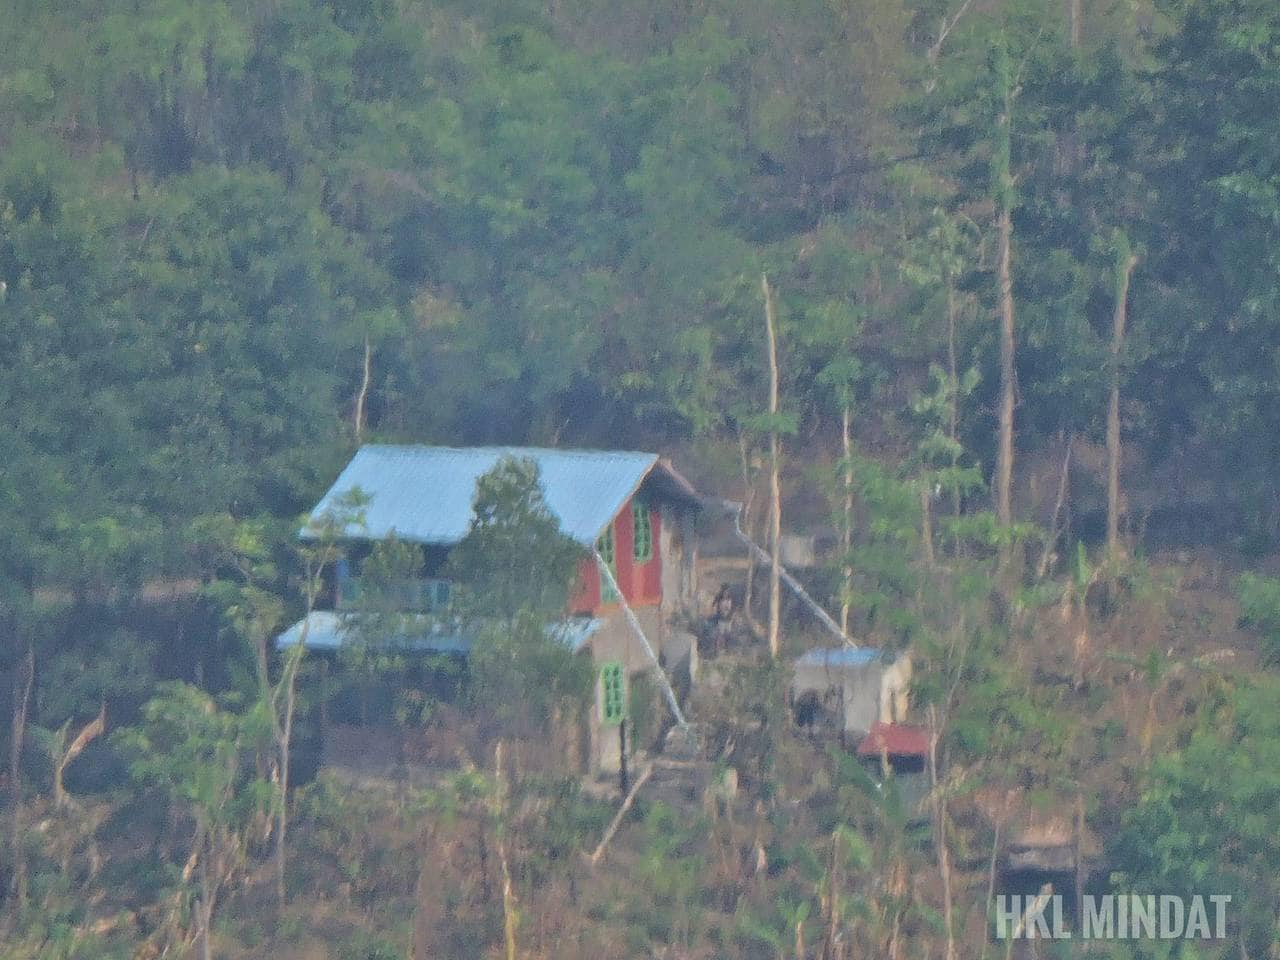 (စစ်ကောင်စီတပ်သားများ နေရာယူထားသော ထင်းချောင်းရွာရှိ နေအိမ်အား တွေ့ရစဉ်။ ဓာတ်ပုံ - HKL-Mindat)